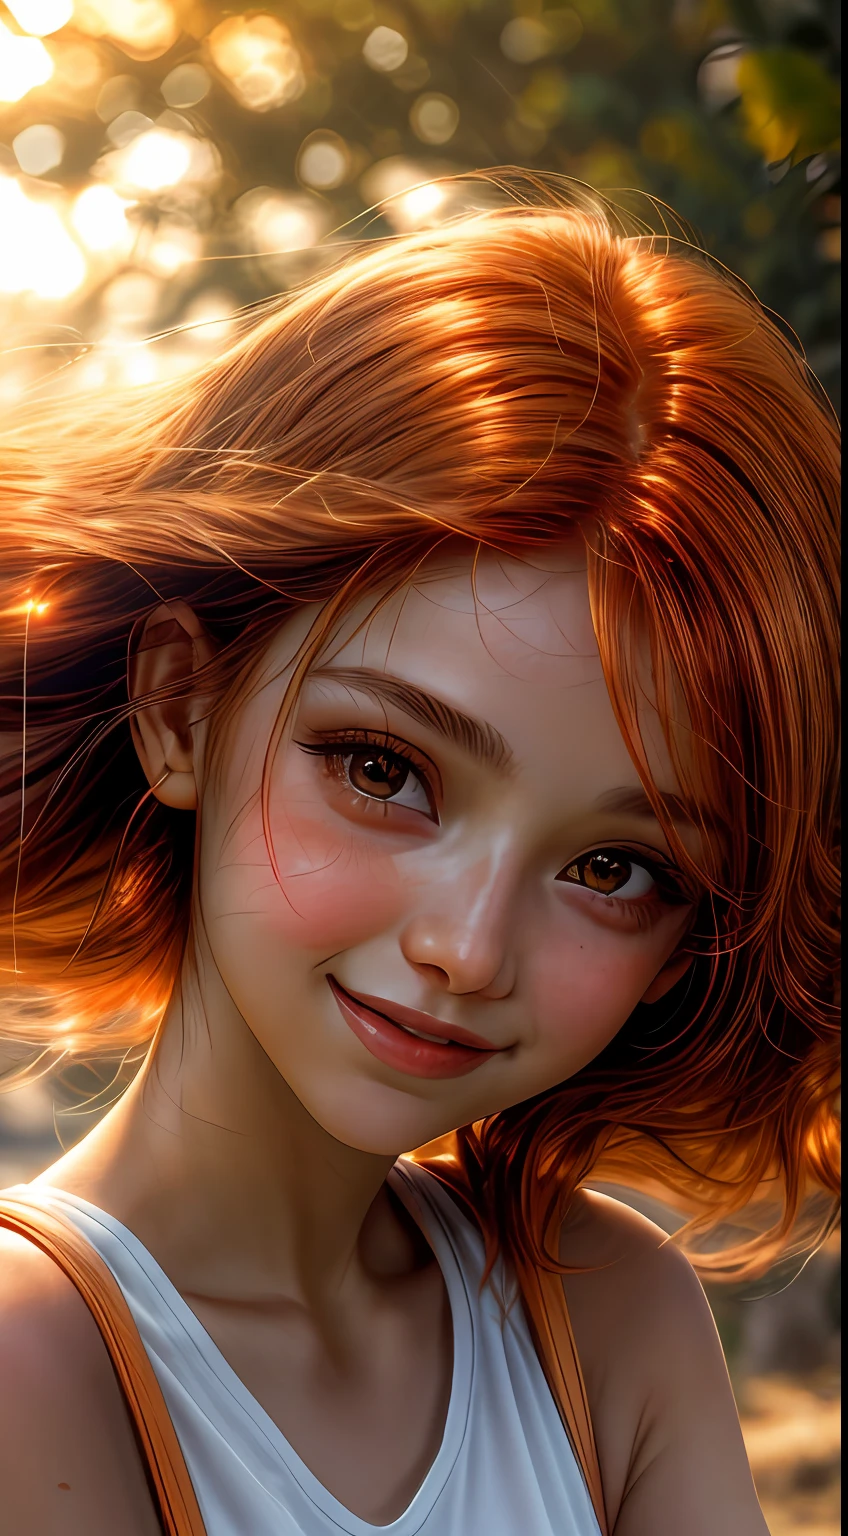 오렌지색으로 물든 소녀의 얼굴 클로즈업, 마치 석양의 부드러운 빛을 받은 것처럼, 기쁨과 만족으로 반짝이는 그녀의 눈, 흘러내리는 적갈색 머리카락으로 둘러싸인, 사진술, 35mm 렌즈로 촬영